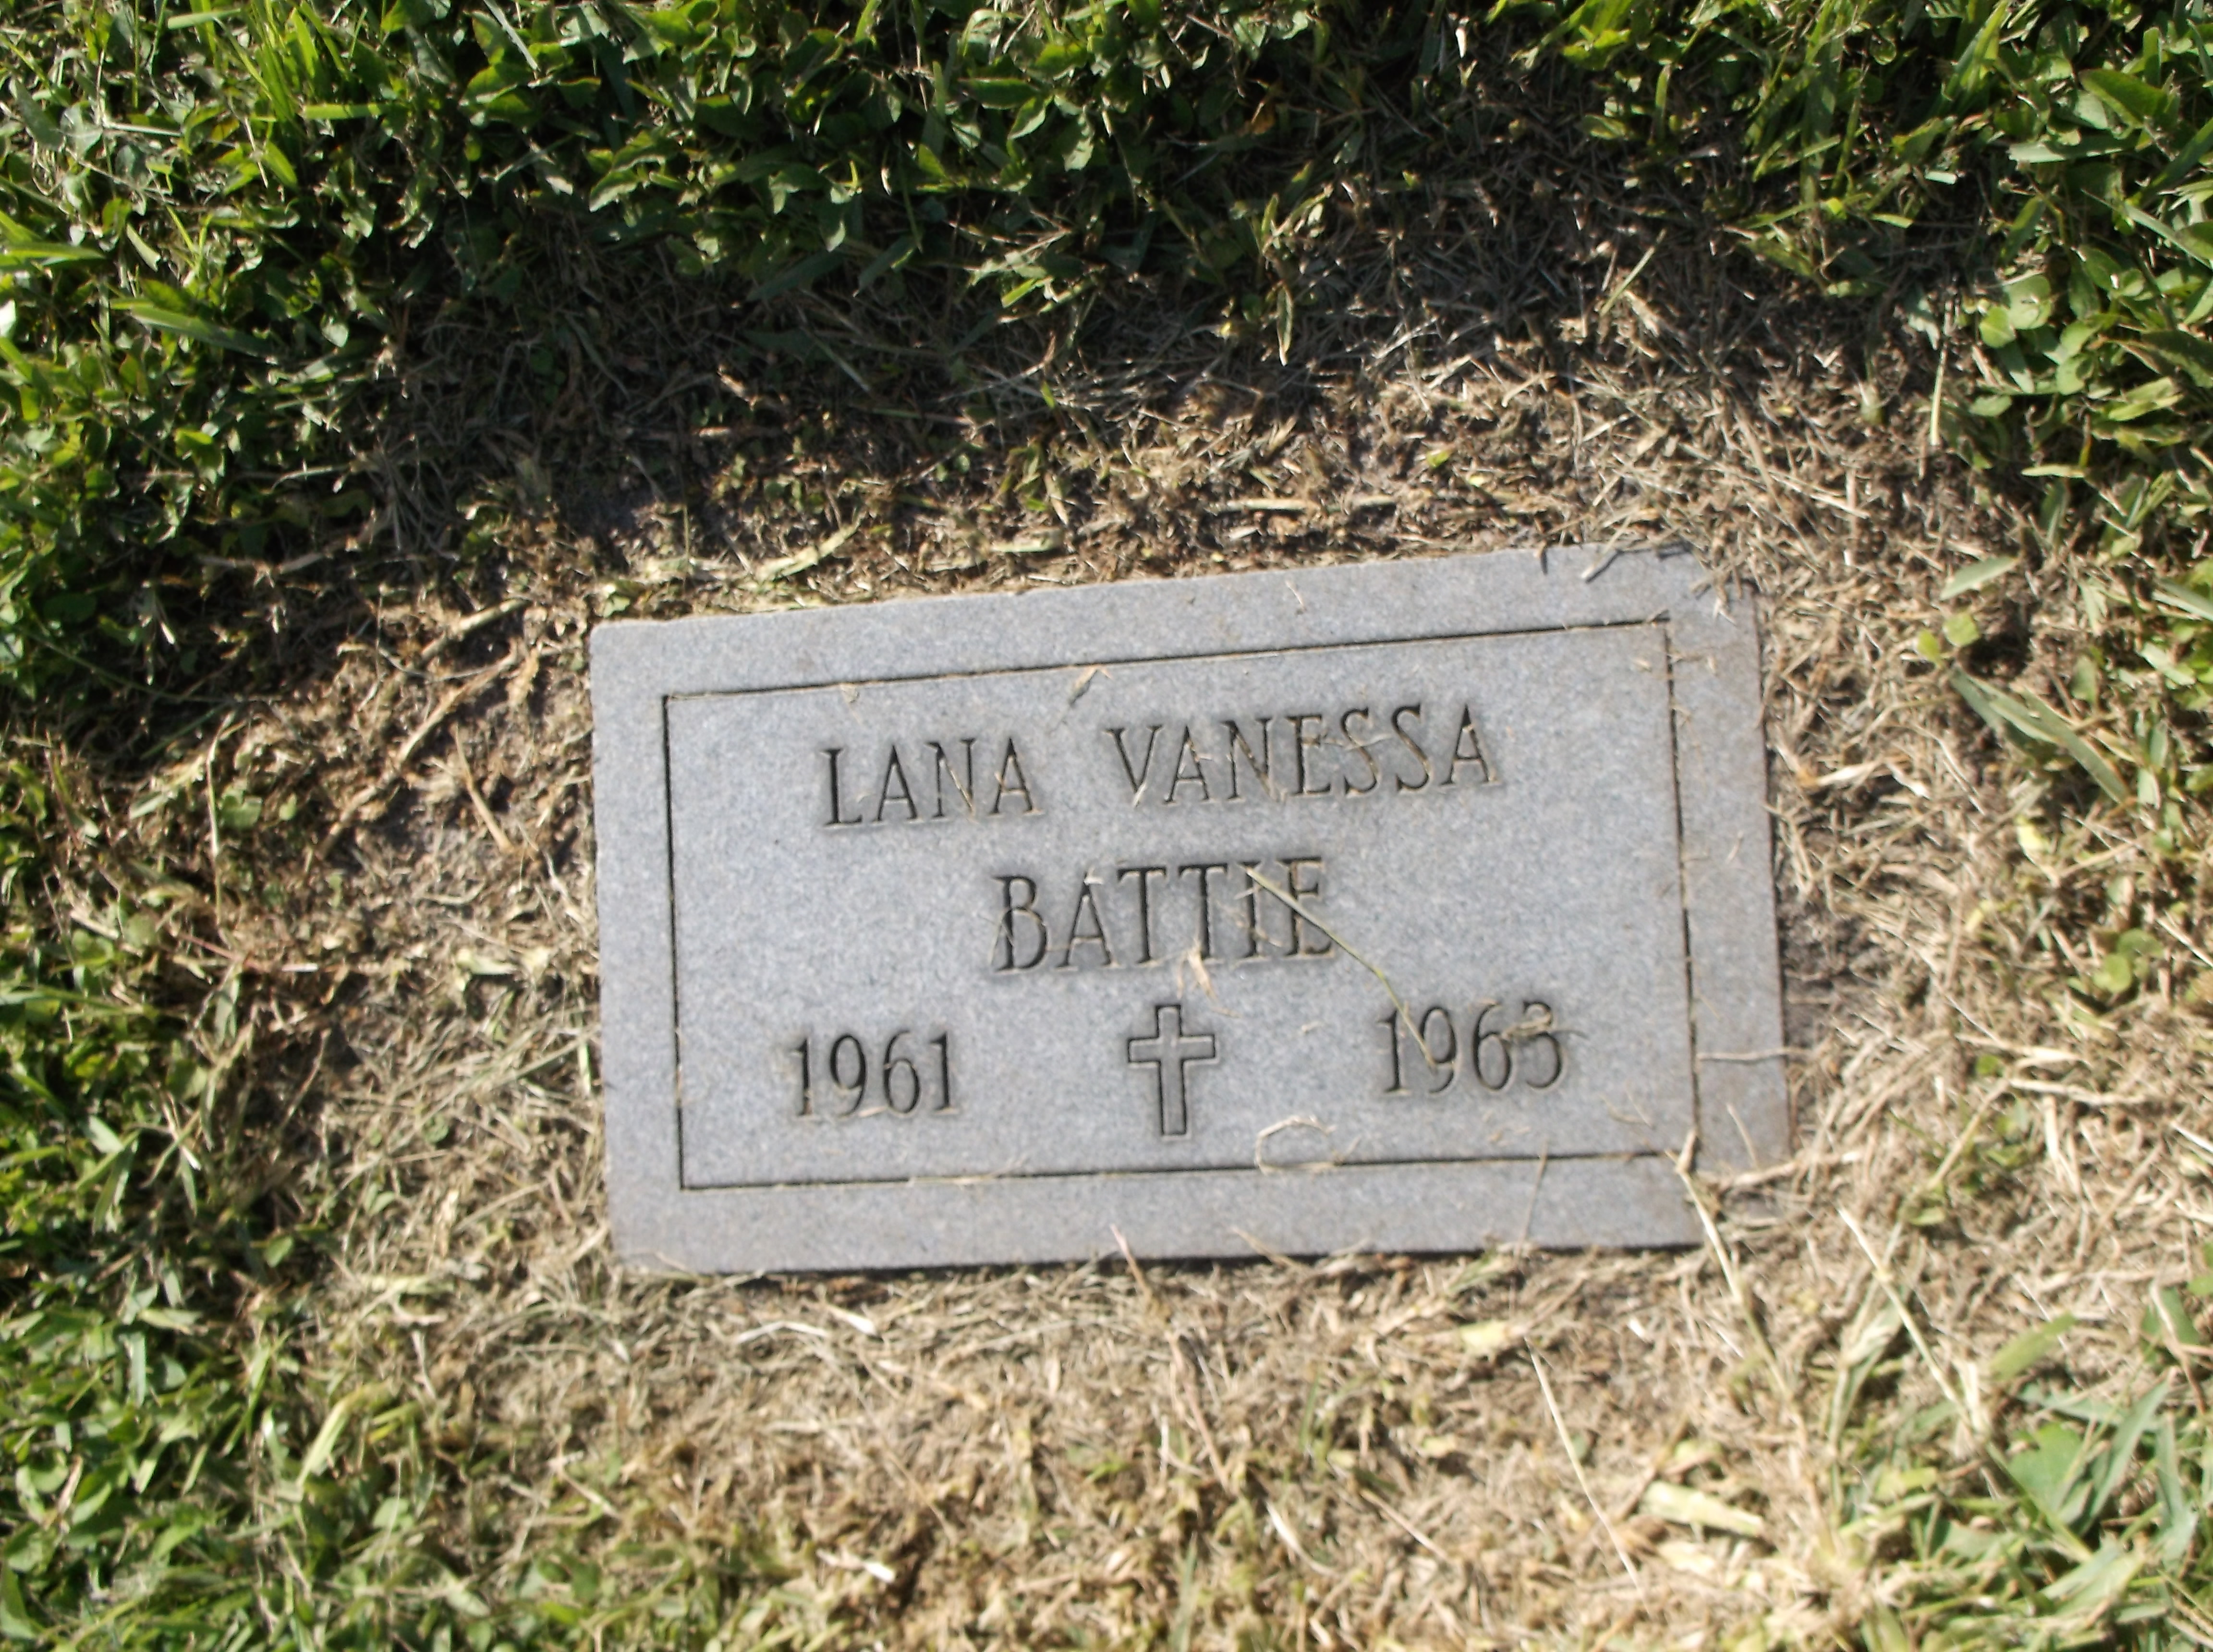 Lana Vanessa Battie